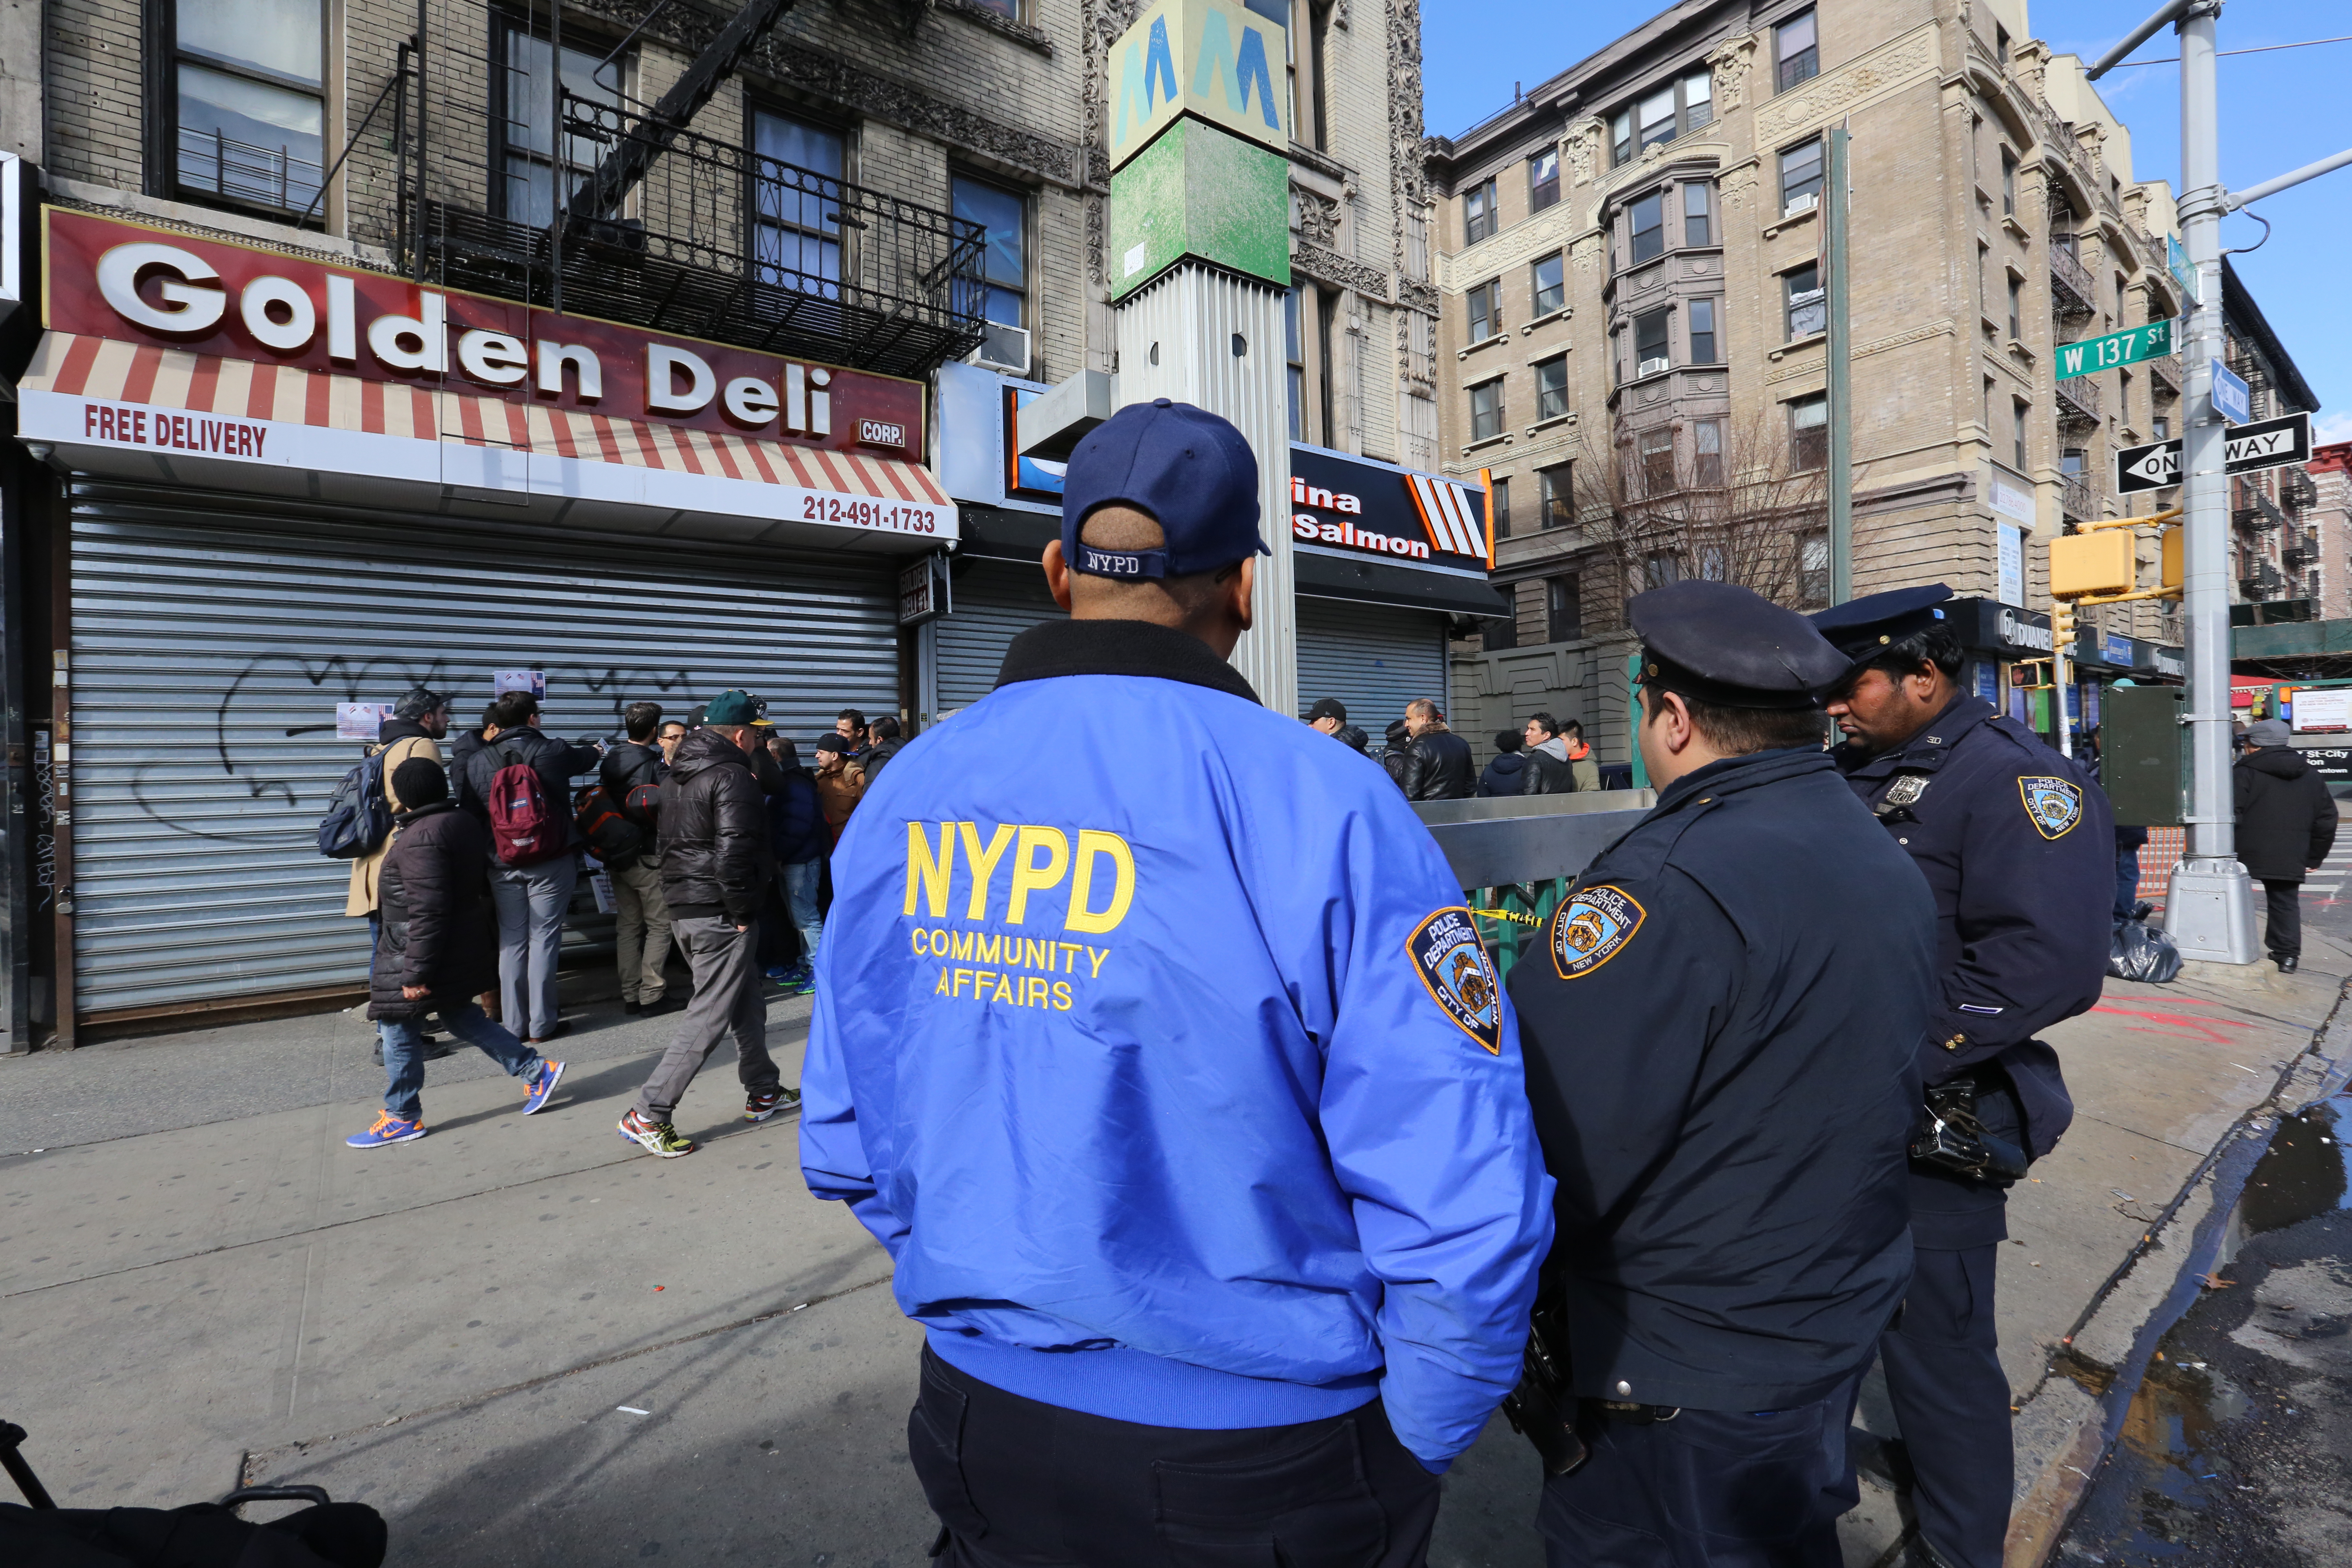 Bodega de Nueva York cierran protestando medidas anti musulmanas del gobierno de Trump.